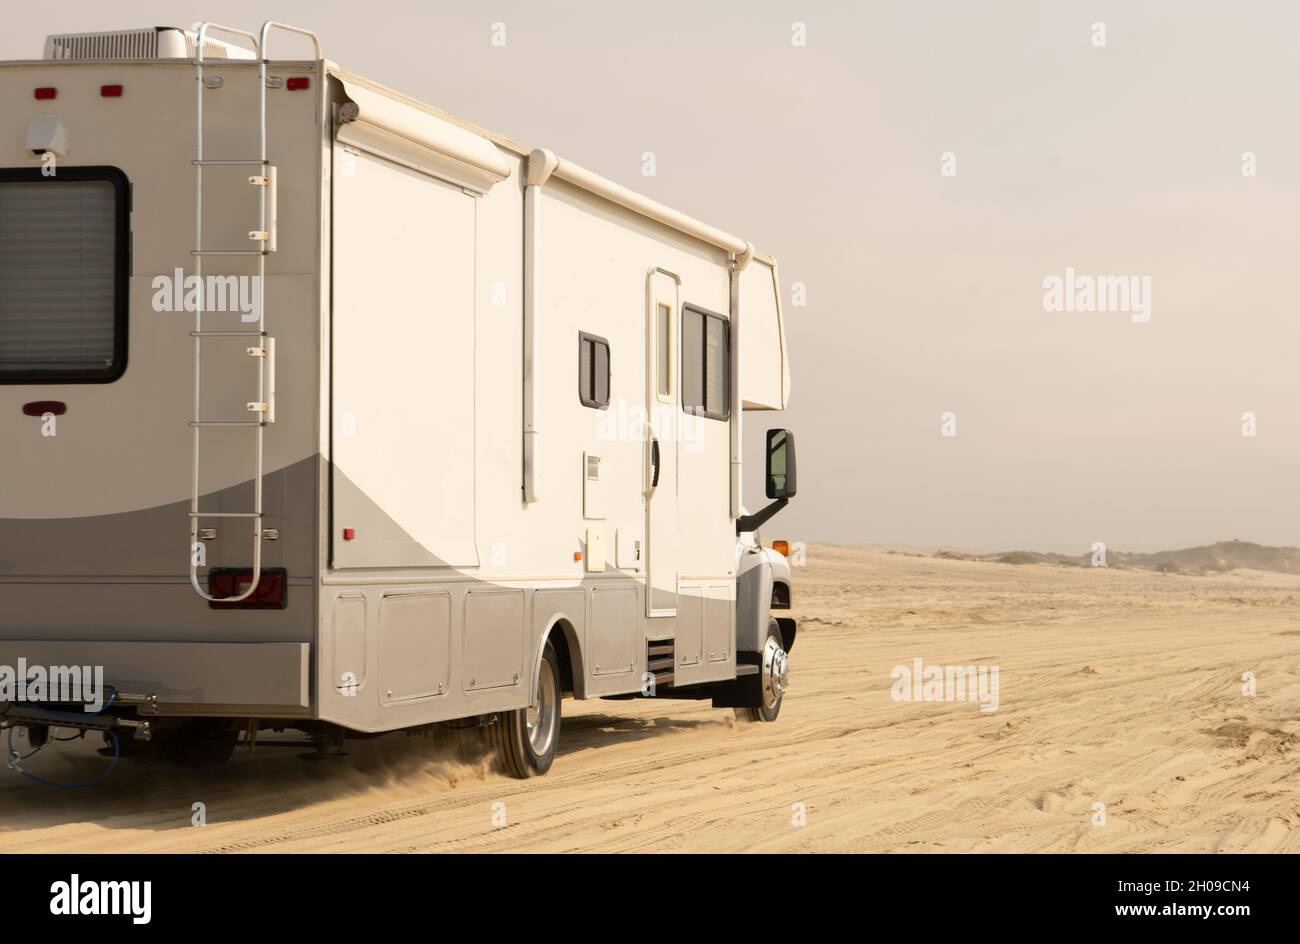 Classe C Camping camping-car camping-car sur une plage.Autocar rapide sur un sable.Pismo Beach, Californie, États-Unis. Banque D'Images